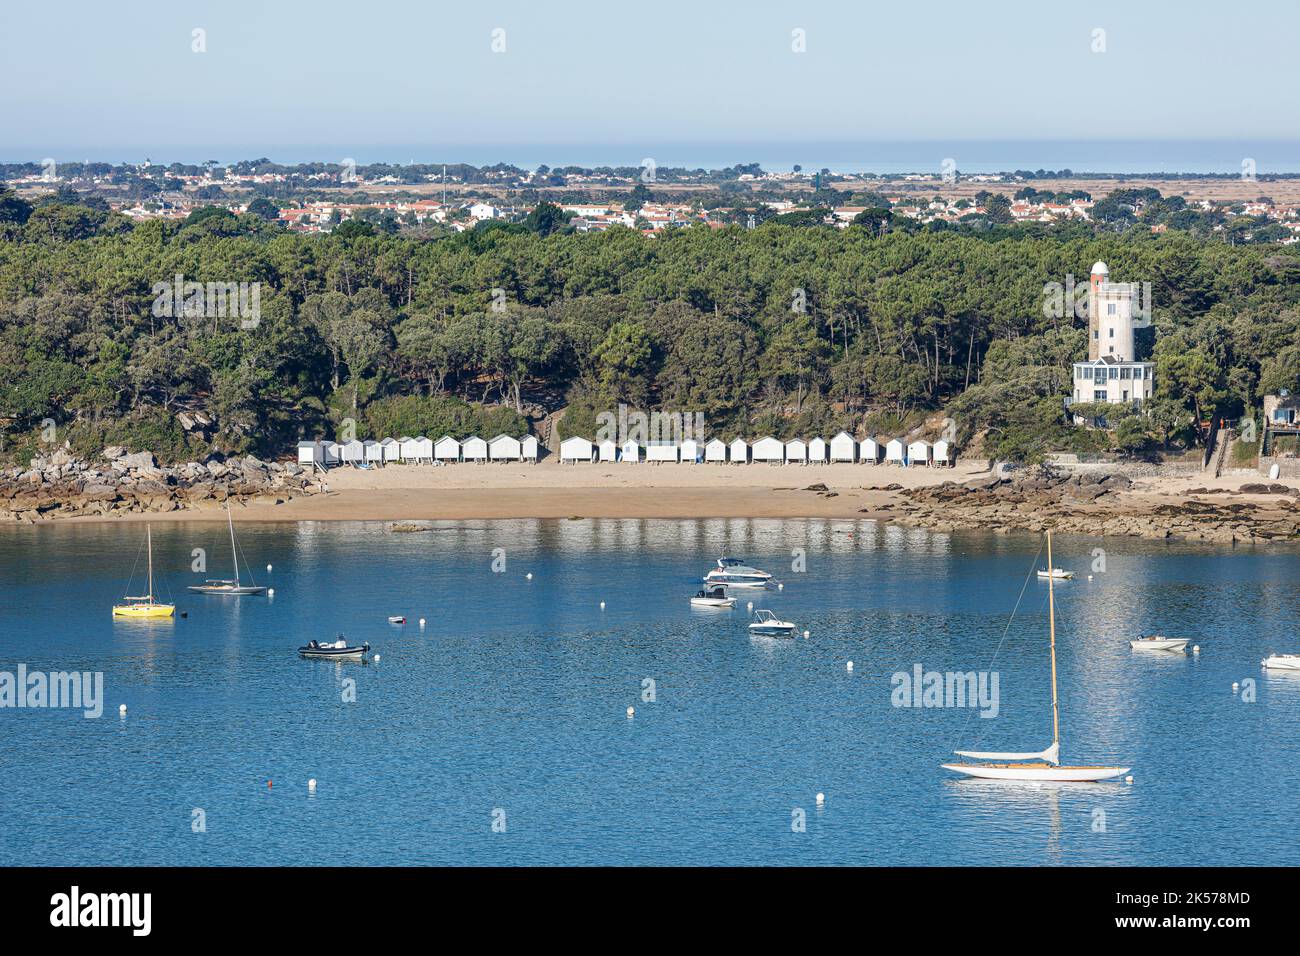 France, Vendee, Noirmoutier en l'Ile, l'Anse Rouge beach and Plantier tower (aerial view) Stock Photo